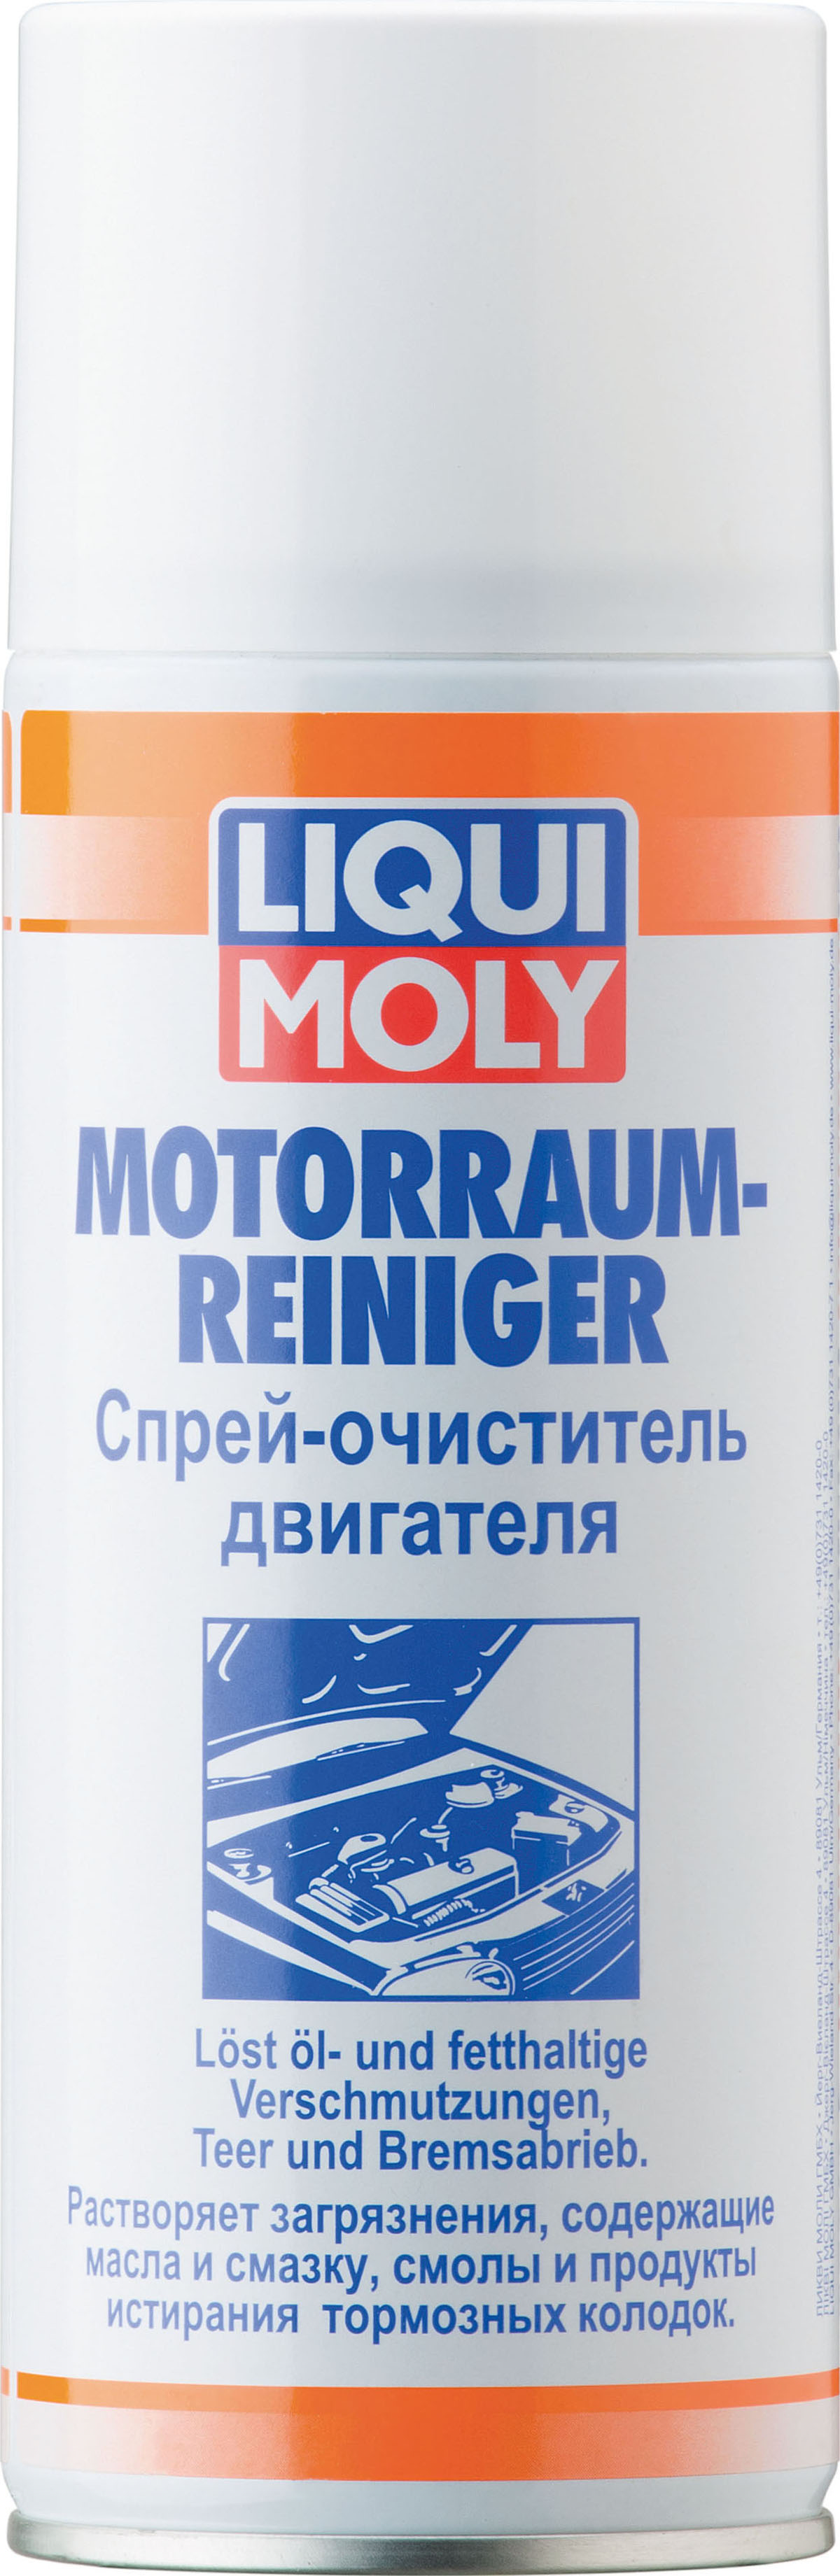 Спрей-очиститель двигателя Motorraum-Reiniger, 400мл - Liqui Moly 3963